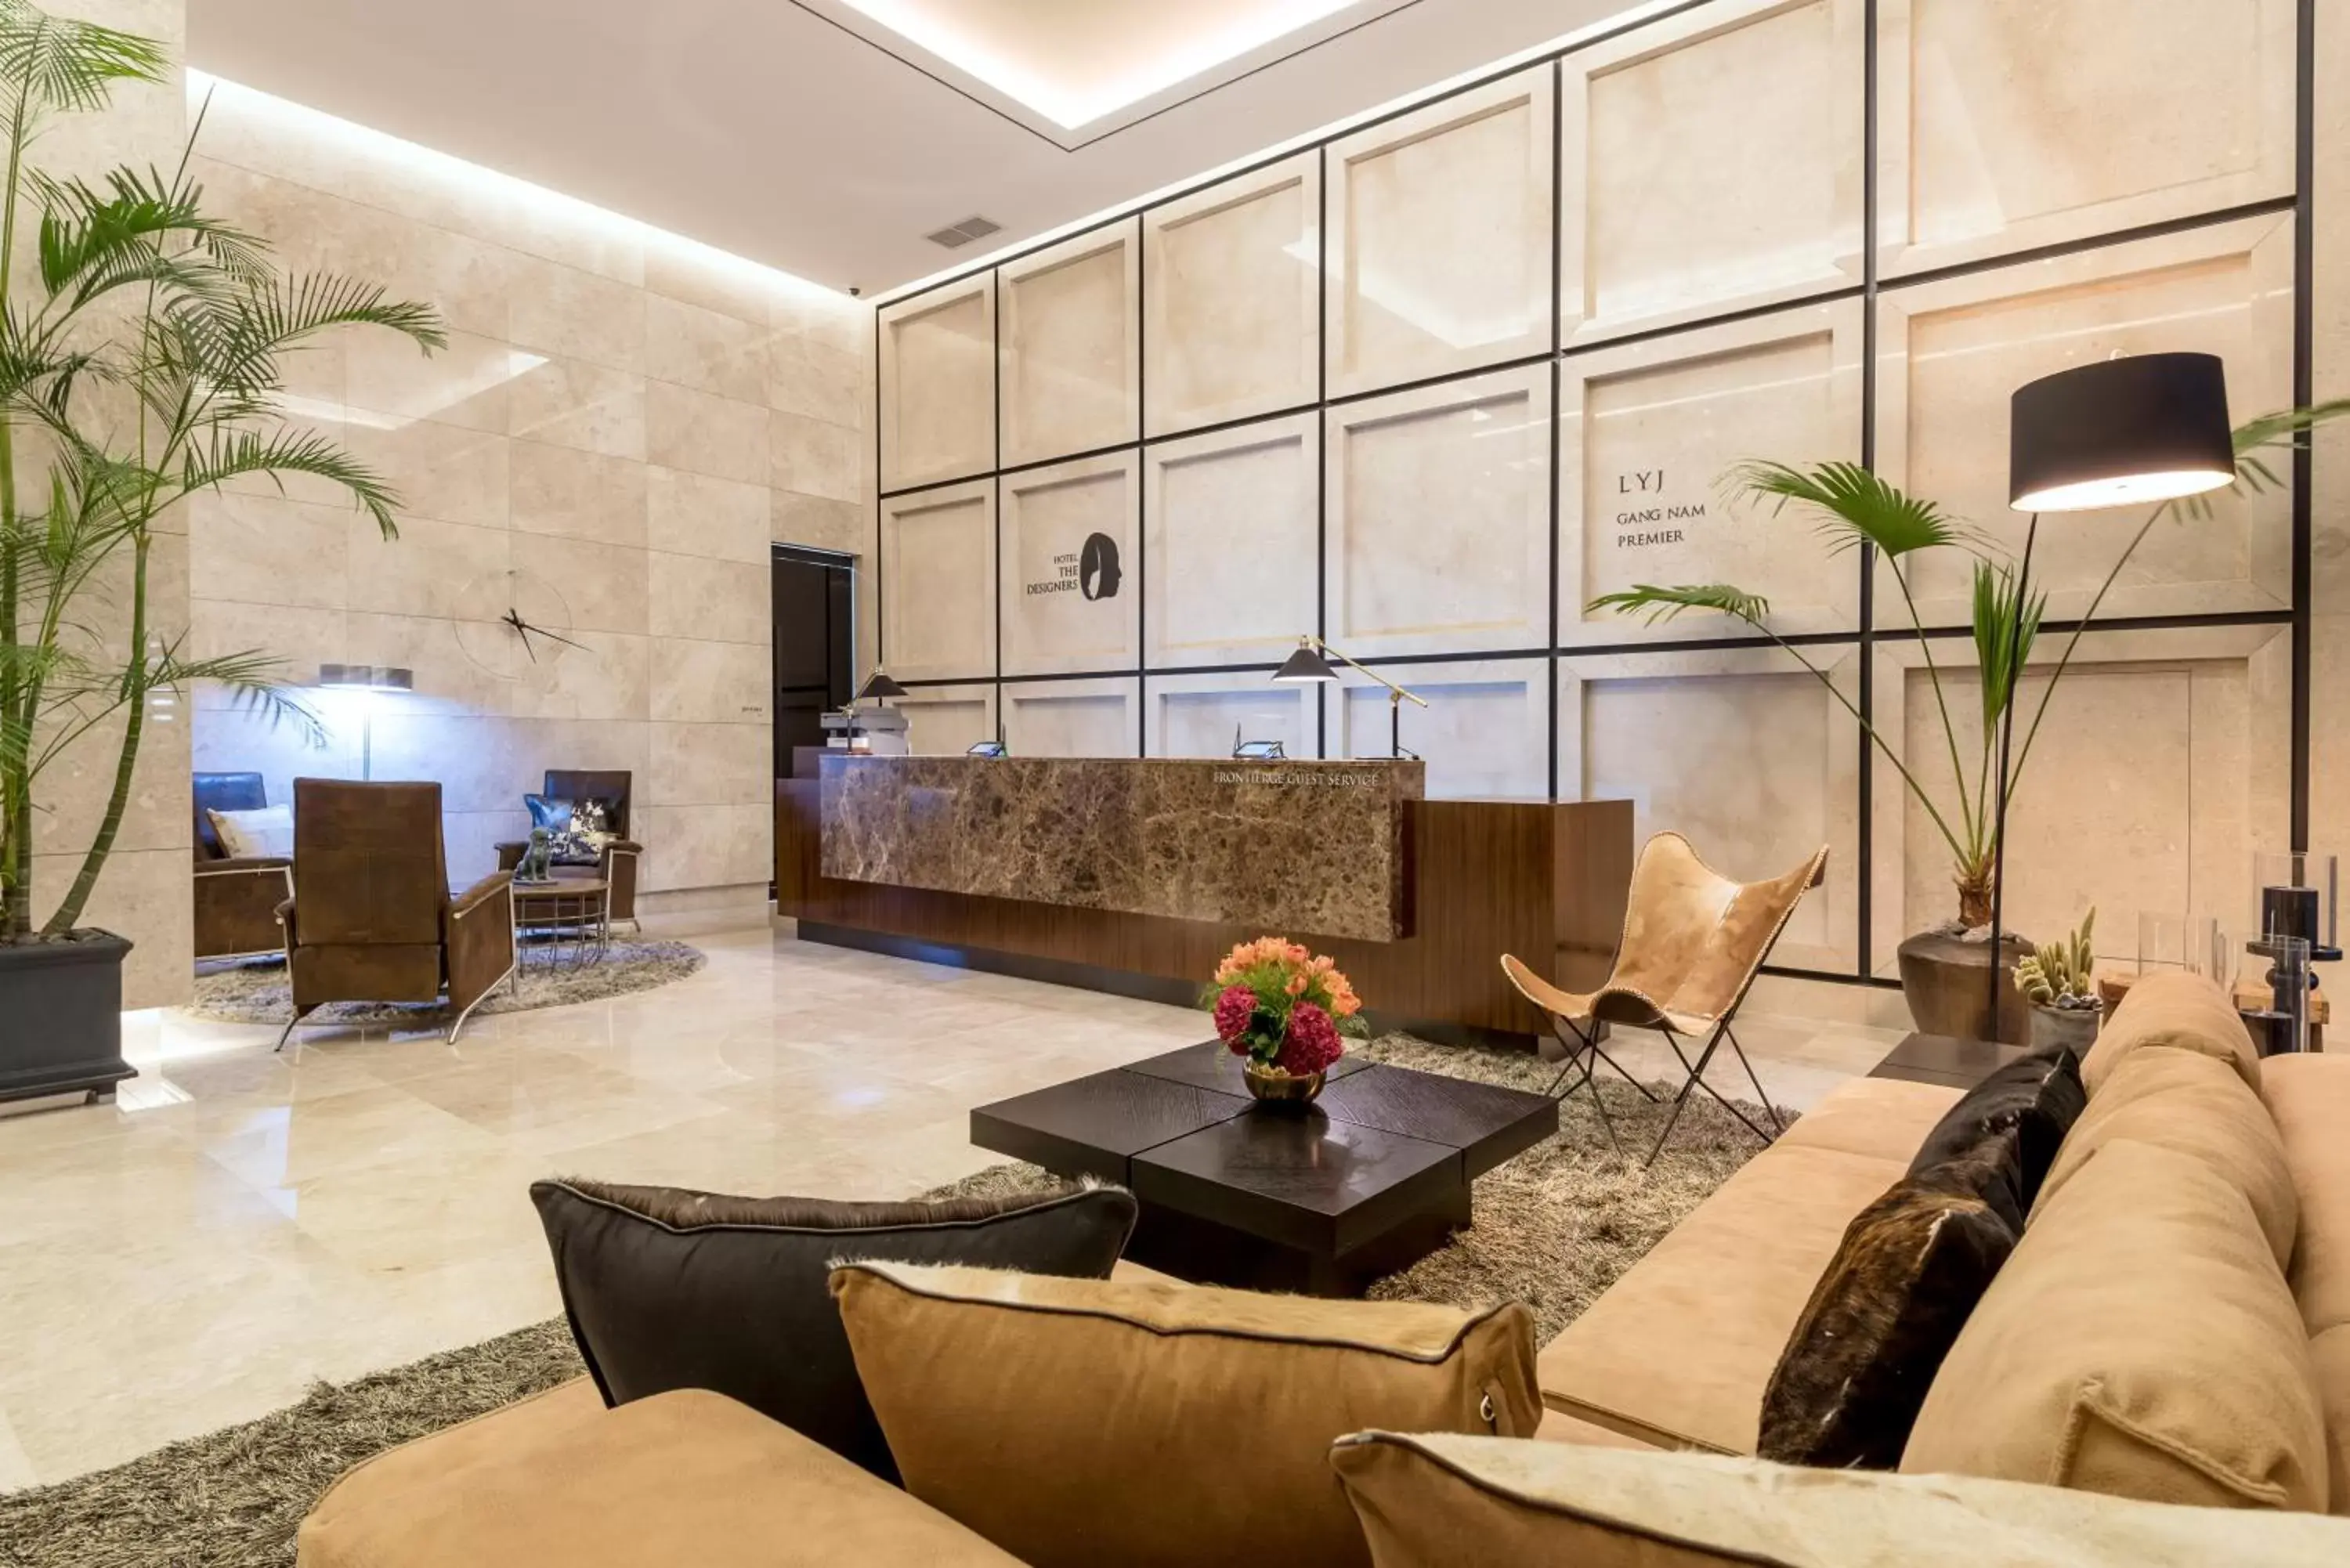 Lobby or reception, Lobby/Reception in Hotel The Designers LYJ Gangnam Premier